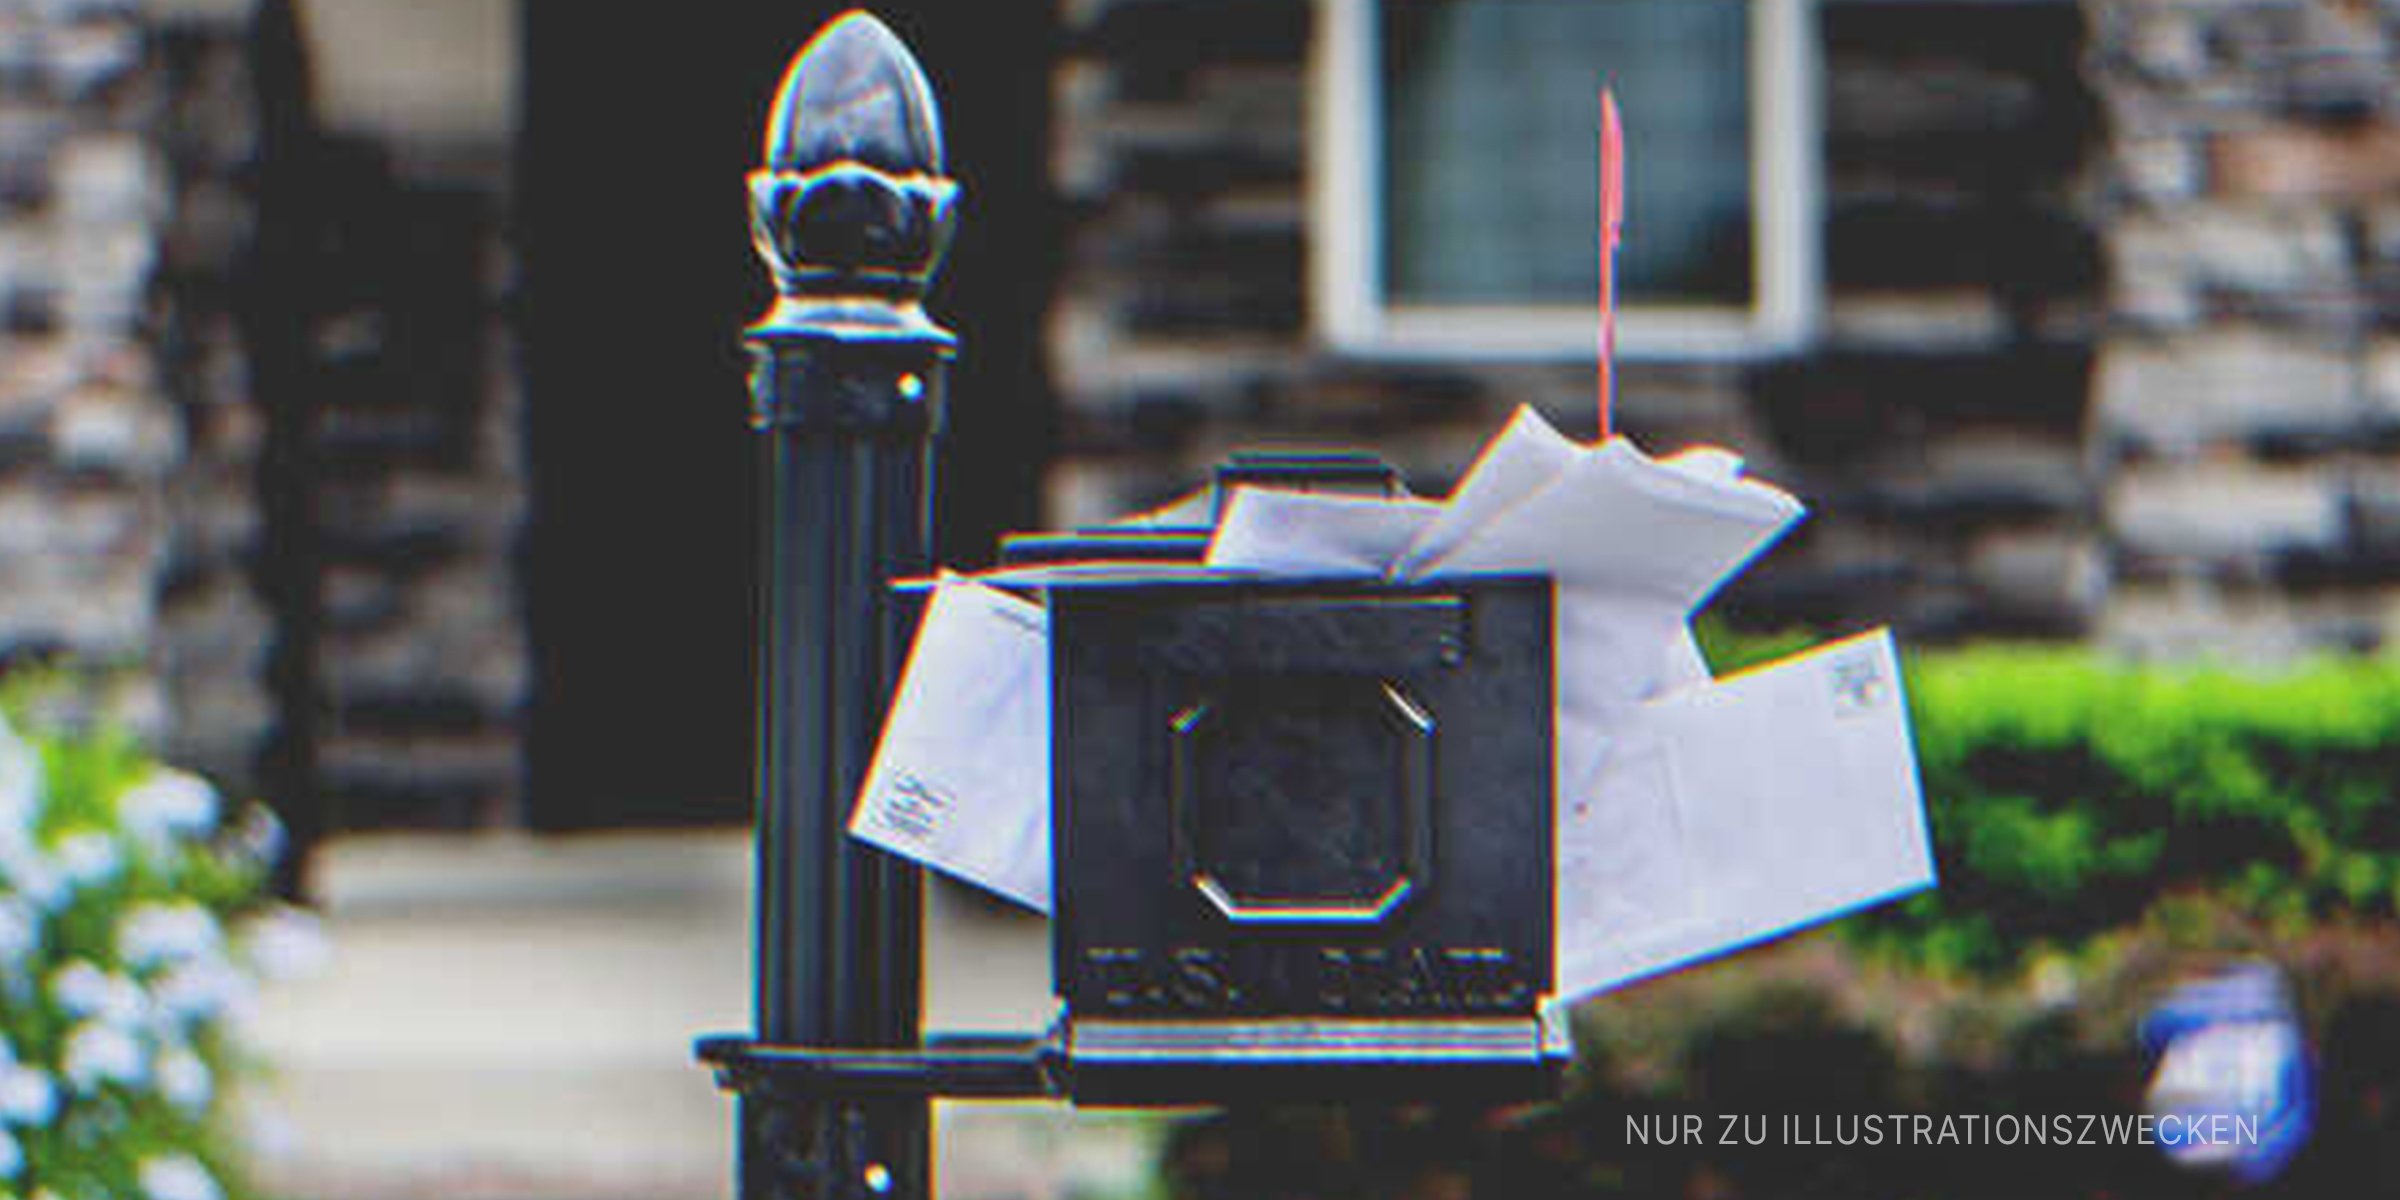 Briefkasten überfüllt mit Briefen. | Quelle: Shutterstock